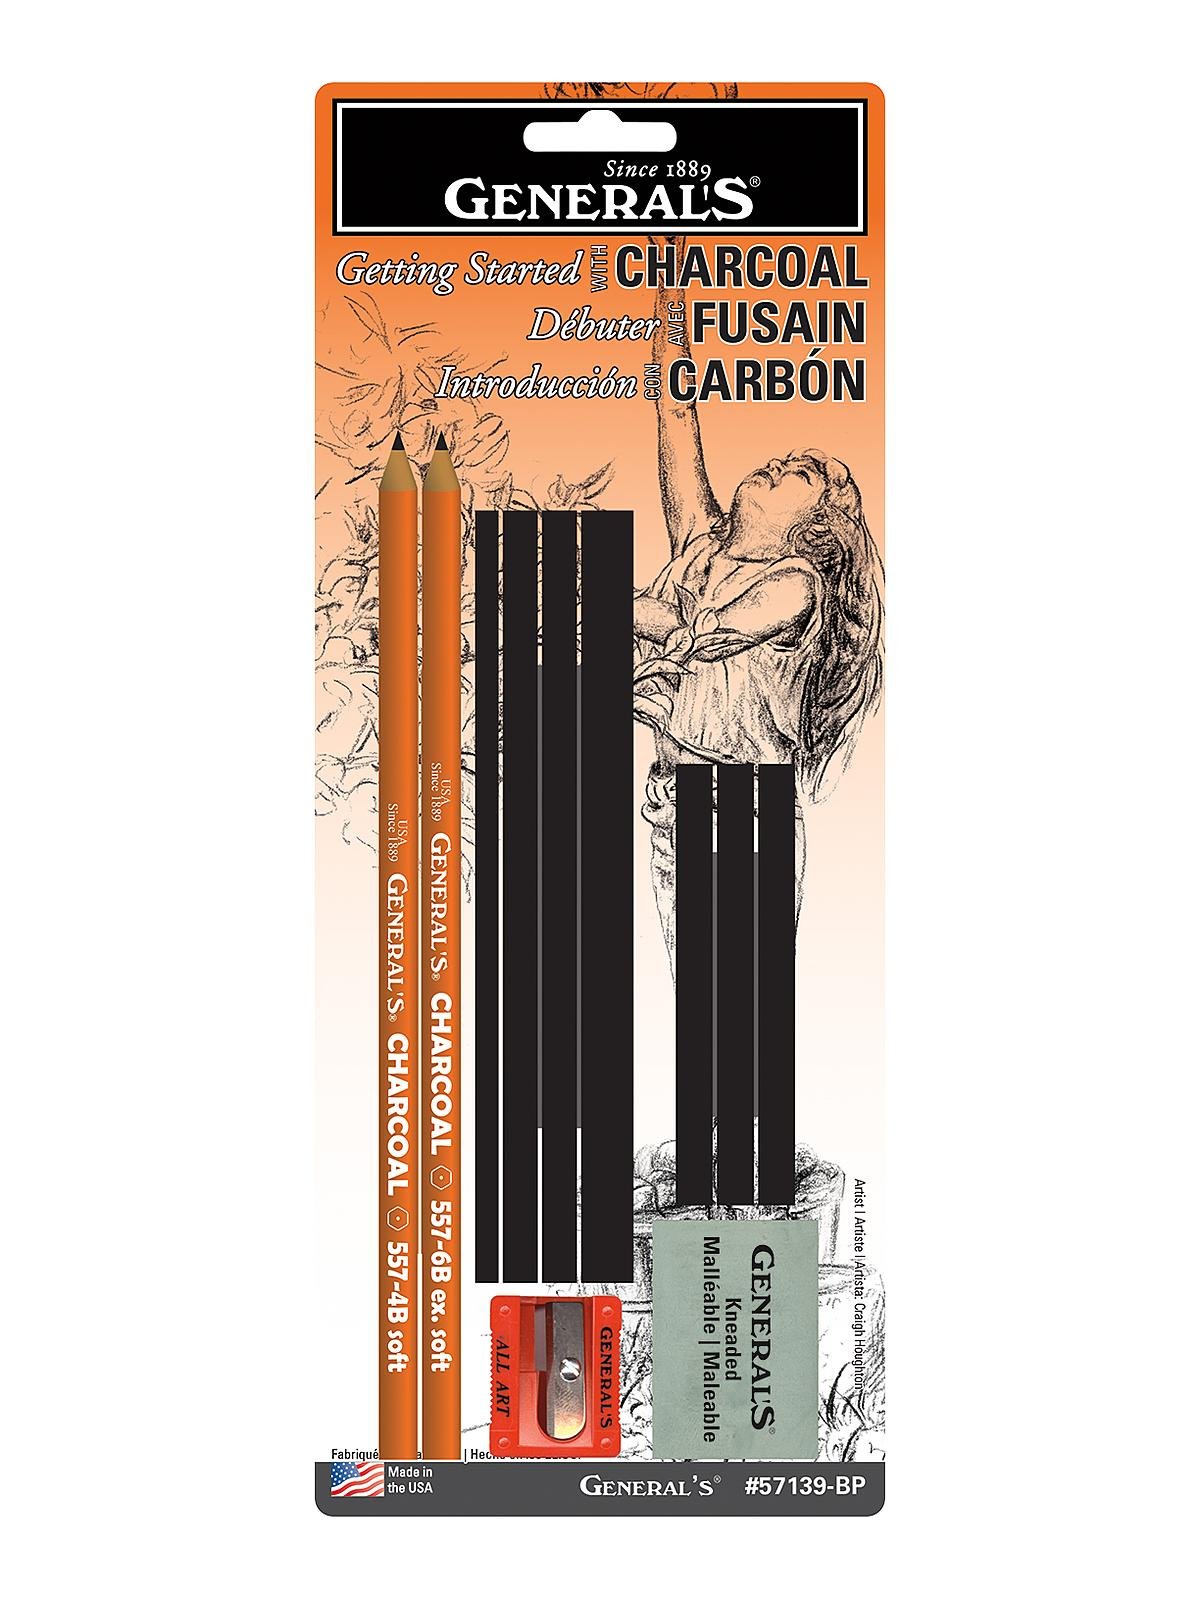 GETHPEN Professional Charcoal Pencils Drawing Set - 7 Pieces Super